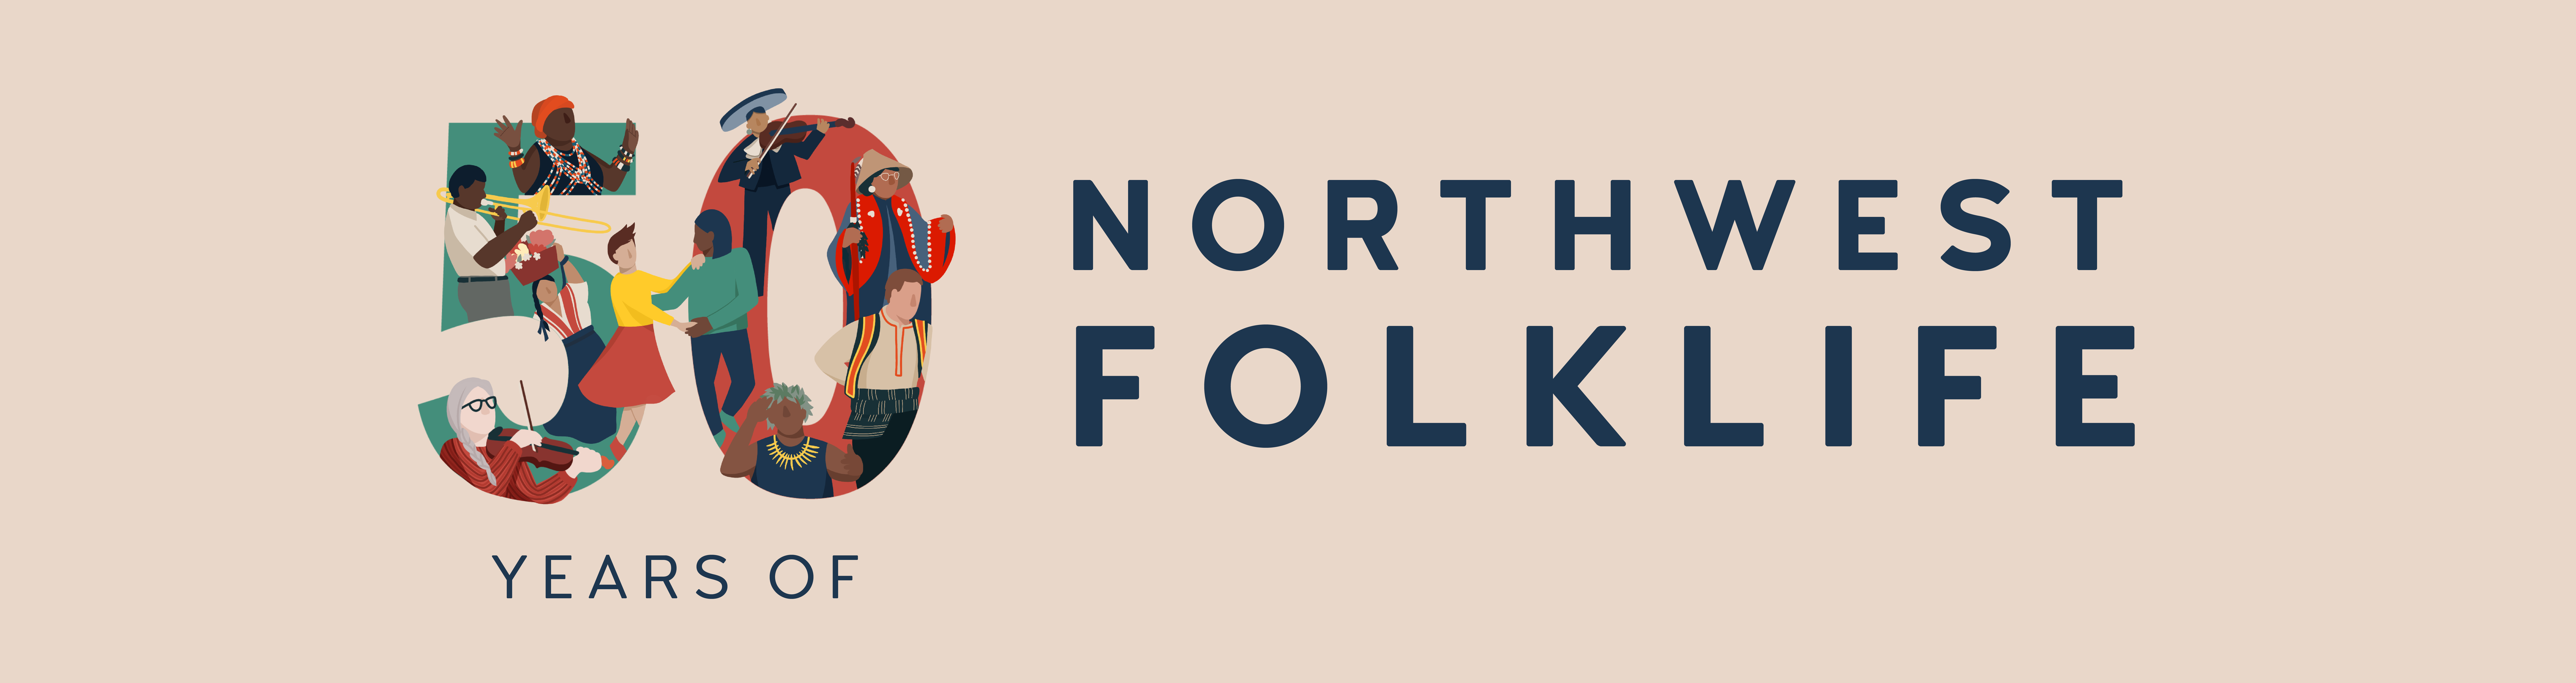 50 Years of Northwest Folklife